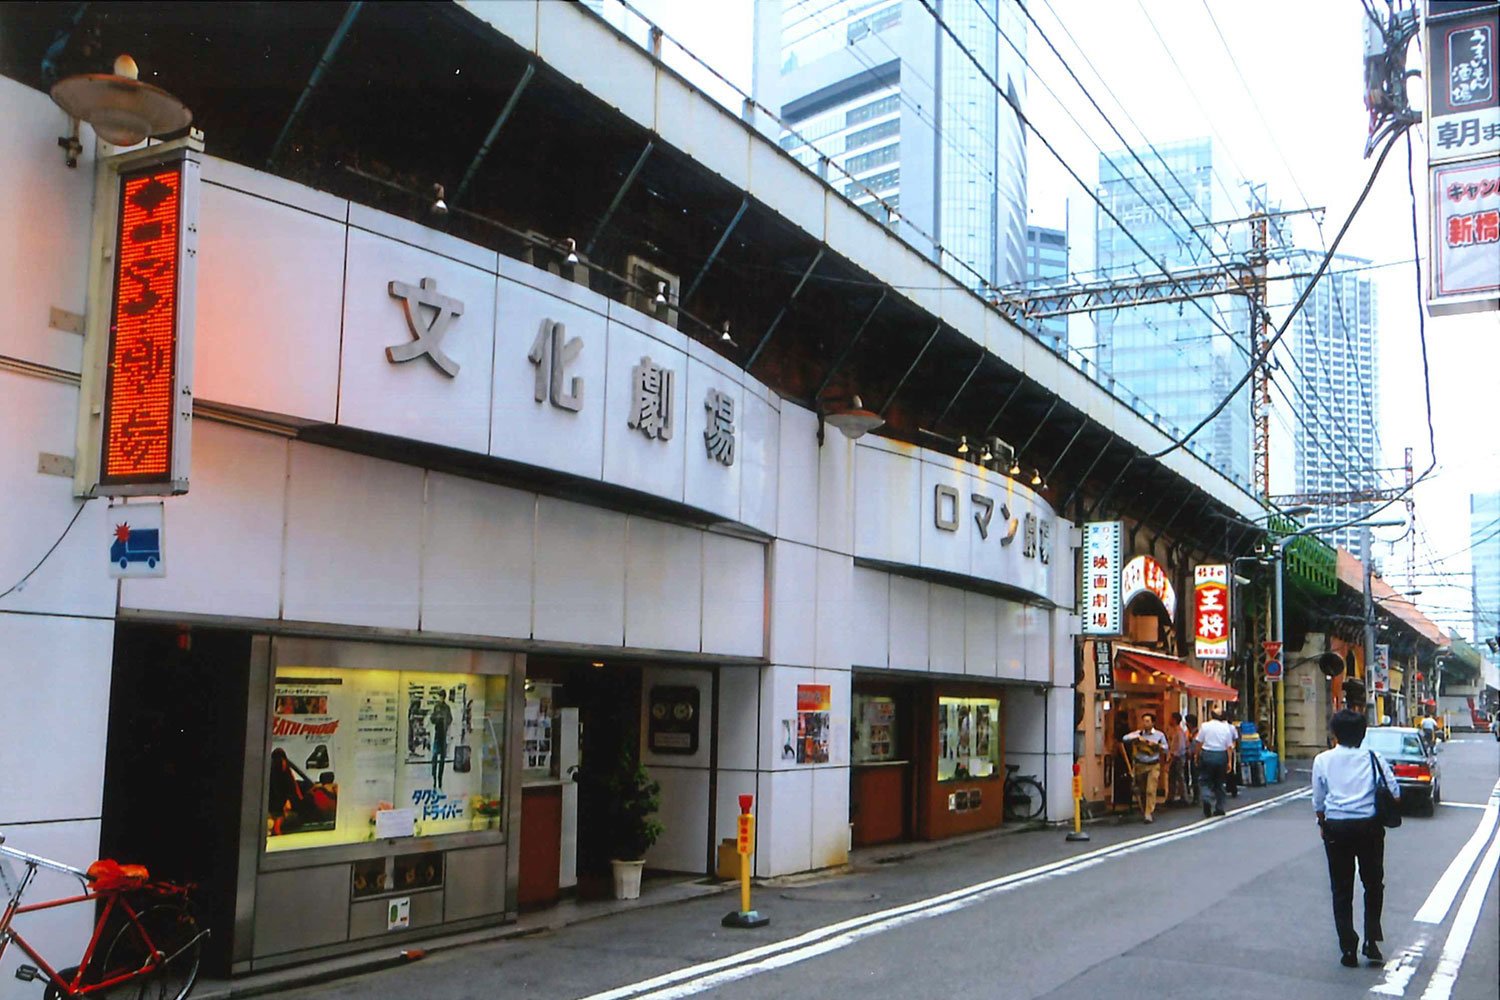 次々と閉館した映画館、マーケット、銀座のクリスマスツリー……2014年下期に姿を消した施設たち【東京さよならアルバム】